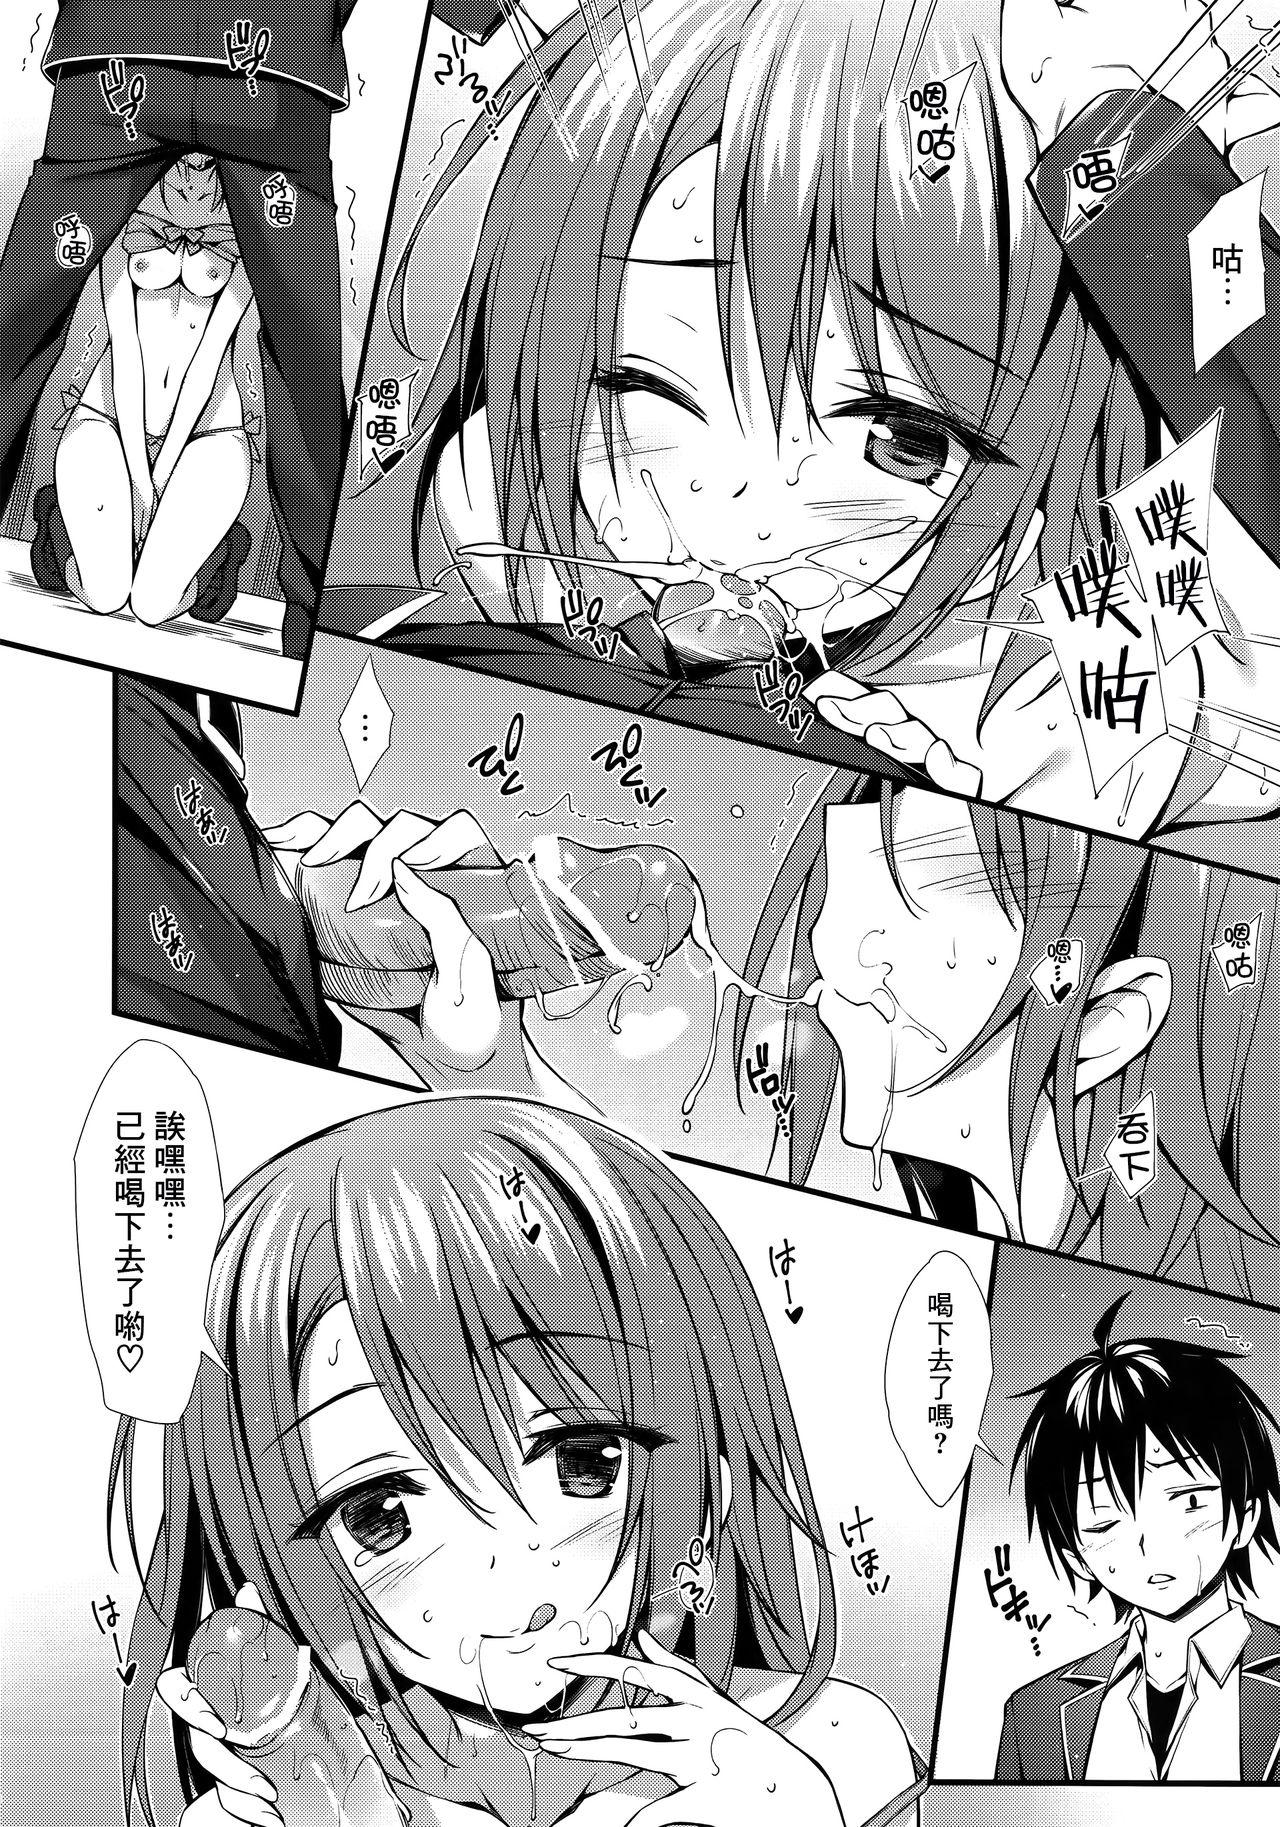 Submission Atashi no Daisuki na Senpai♥ - Yahari ore no seishun love come wa machigatteiru Interacial - Page 9